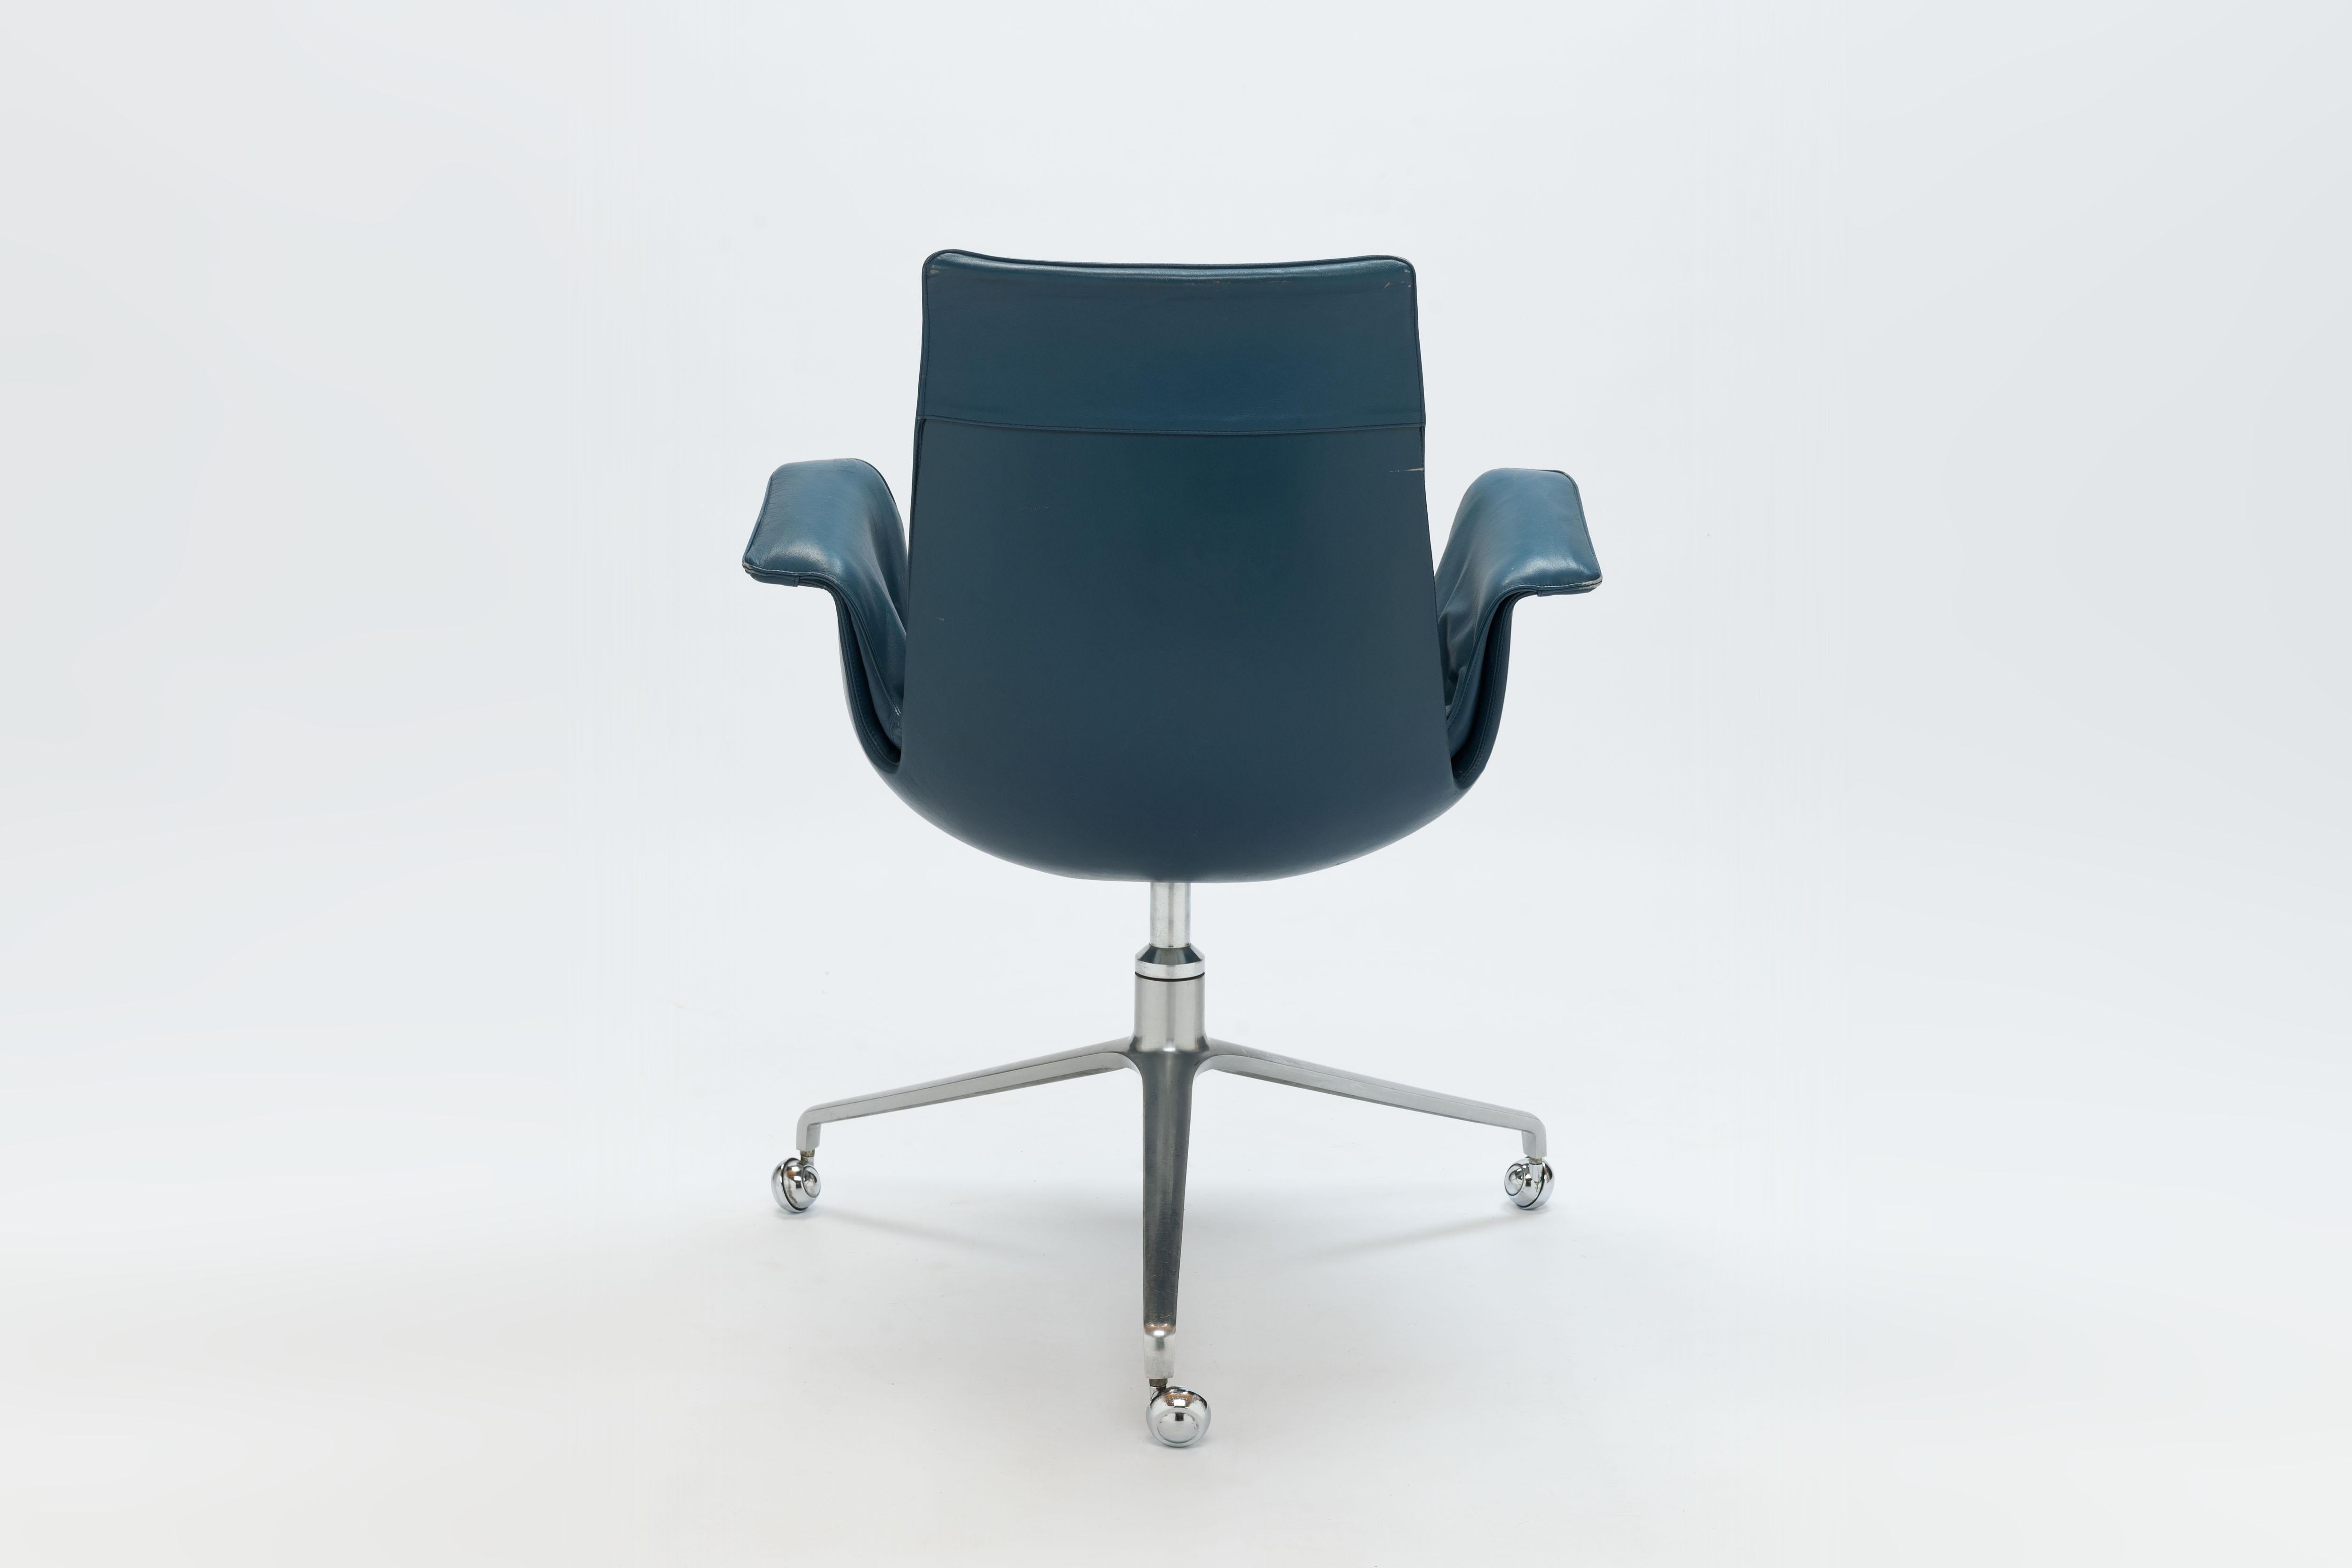  Tulip Bird Desk Chair by Jorgen Kastholm & Preben Fabricius (2 pcs. available)  1